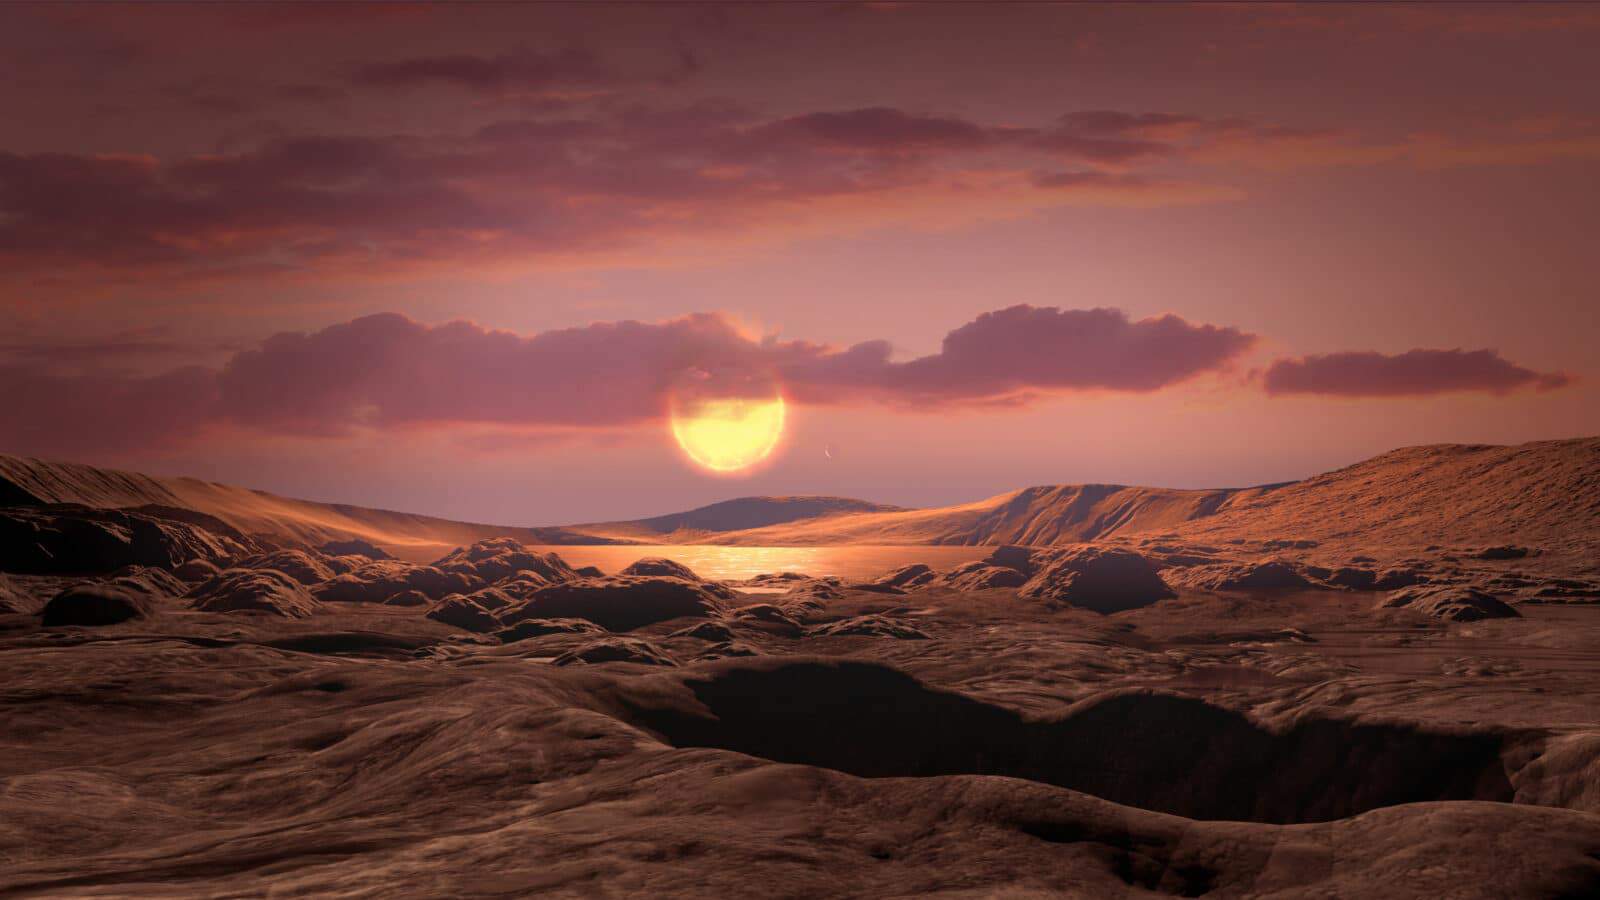 地球からわずか31光年先に居住可能な太陽系外惑星が発見された